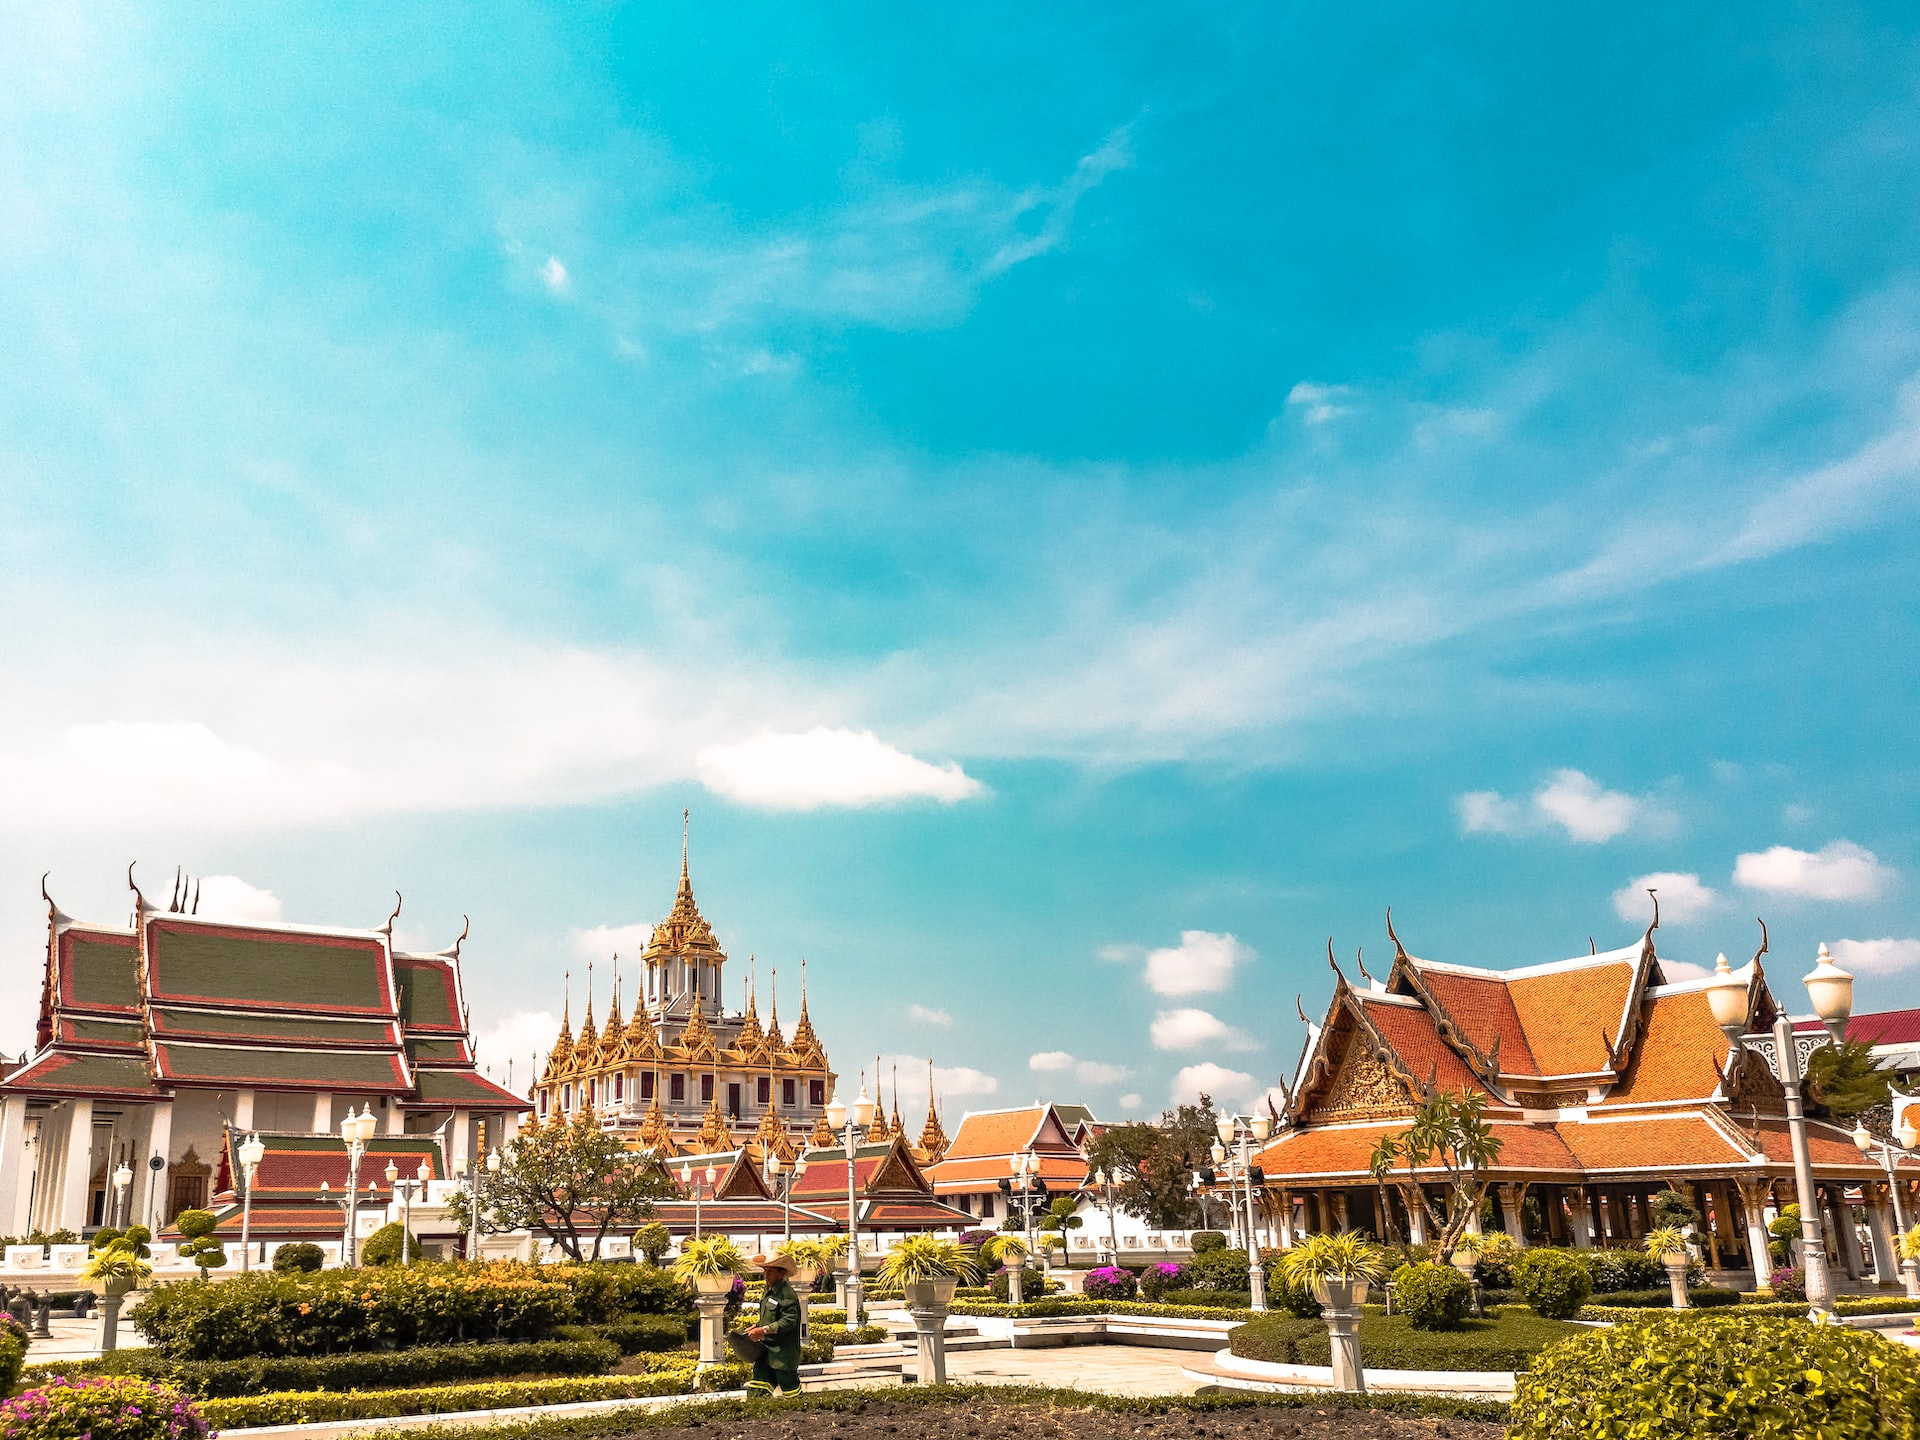 Bangkok temple tour